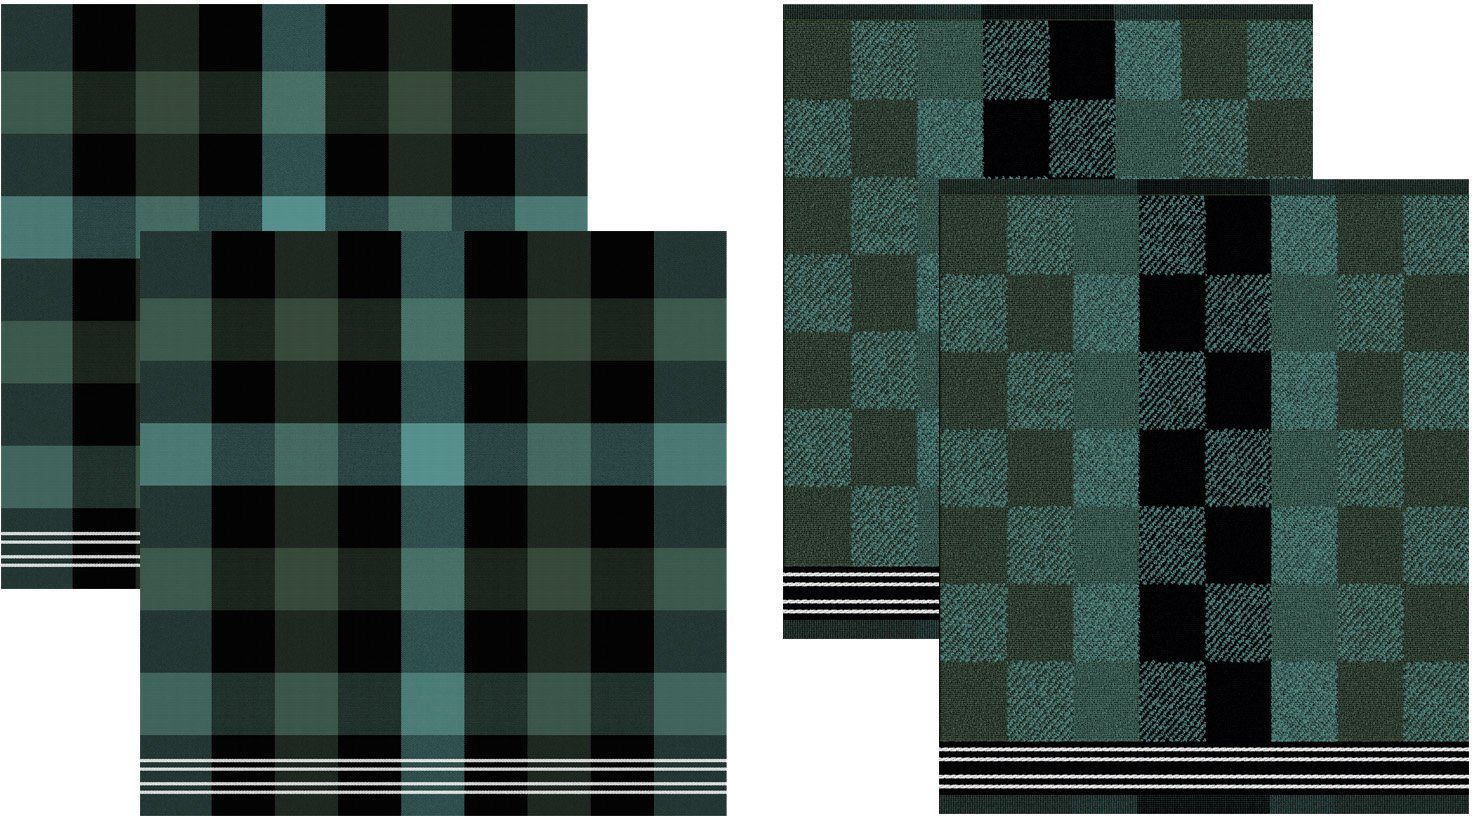 4-tlg., grün/schwarz Geschirrtuch Combi-Set: DDDDD (Set, Feller, aus Geschirrtuch) 2x 2x bestehend Küchentuch +